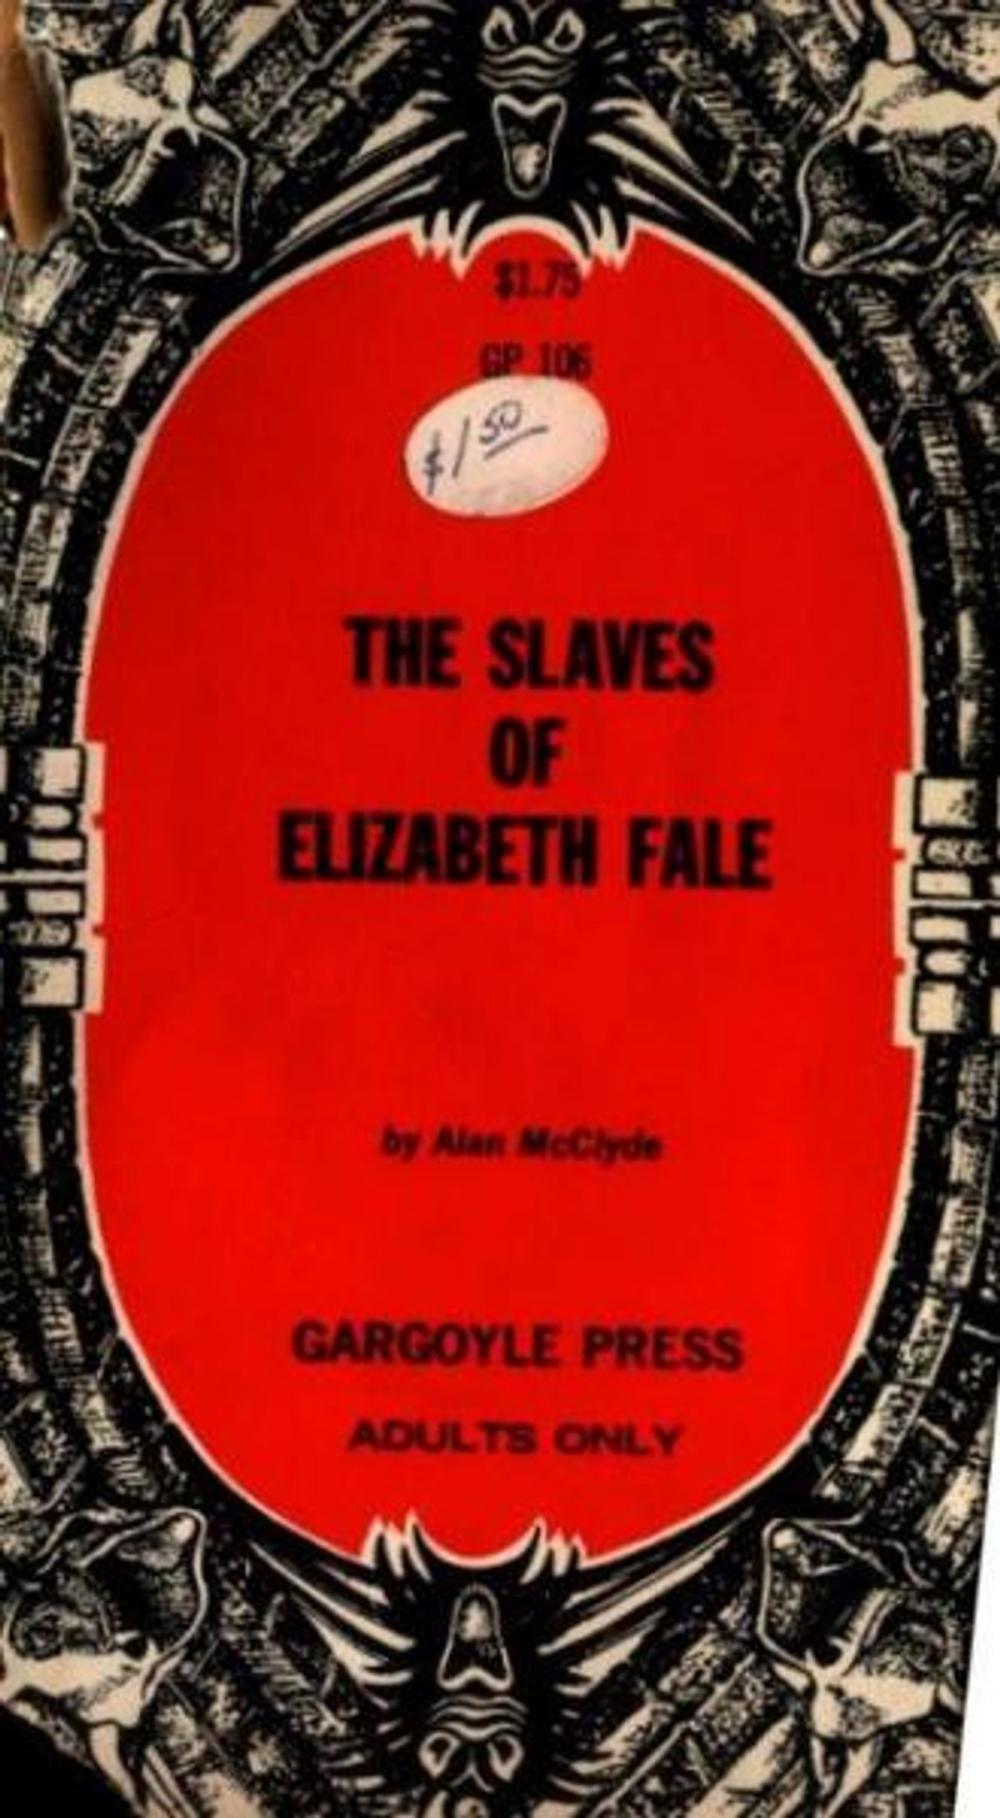 Big bigCover of The Slaves Of Elizabeth Fale